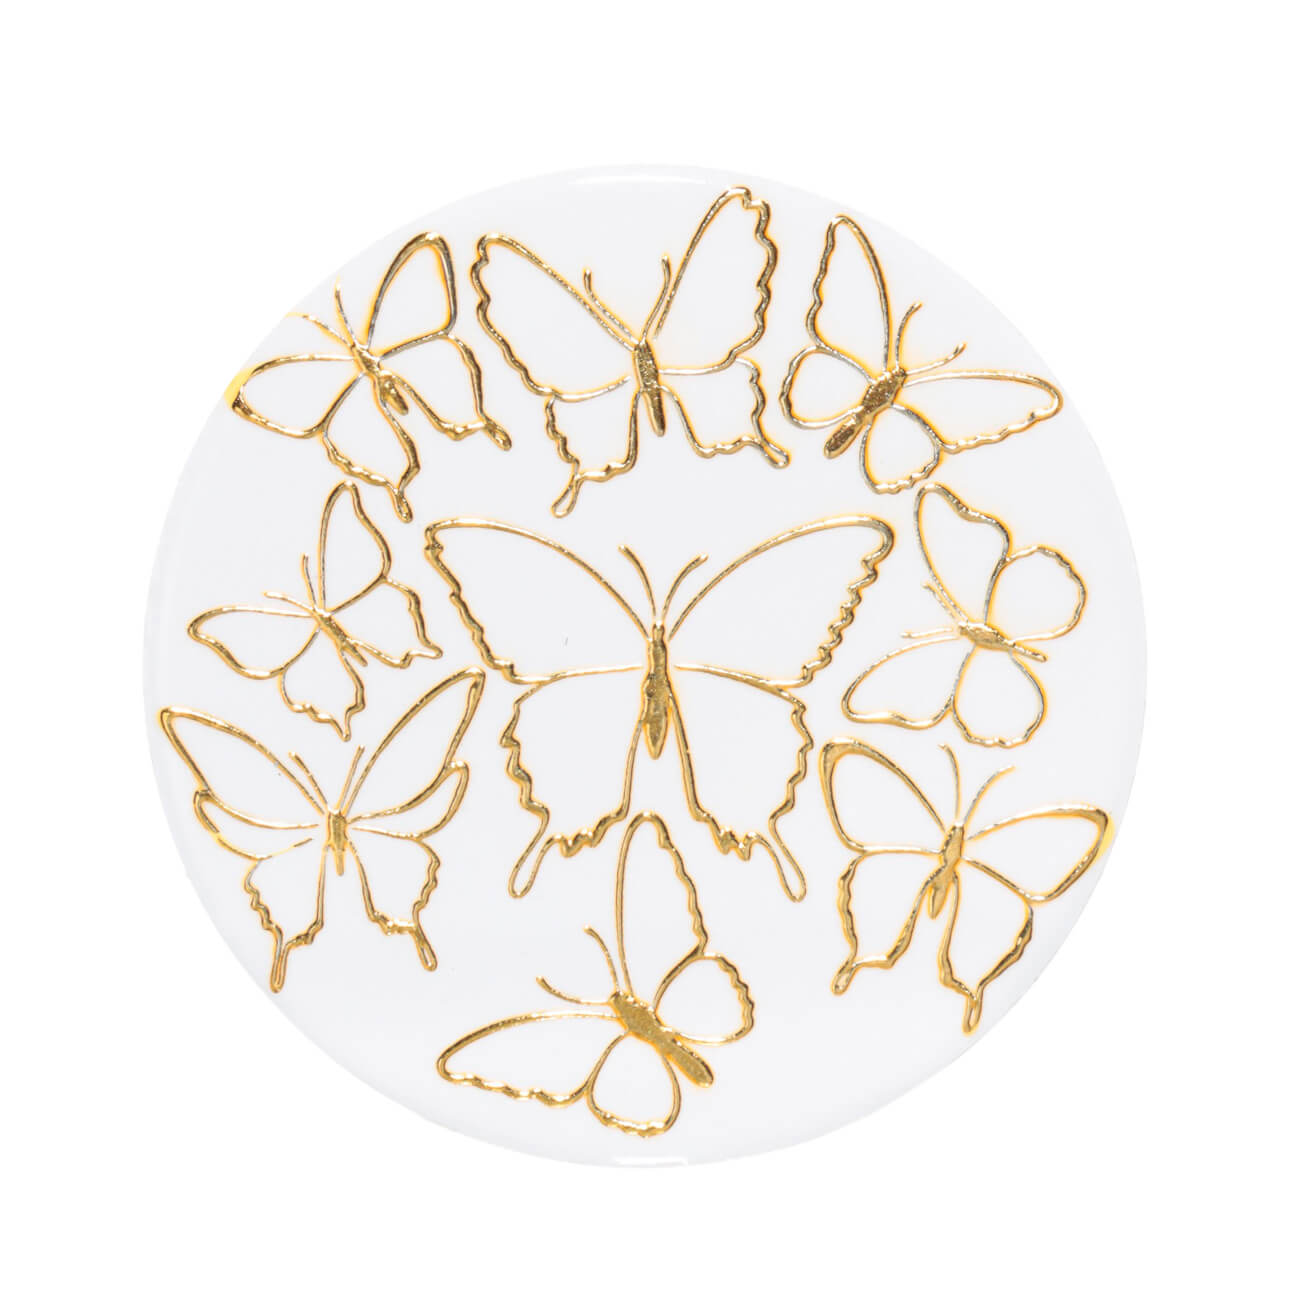 Подставка под кружку, 11 см, керамика/пробка, круглая, белая, Золотистые бабочки, Butterfly